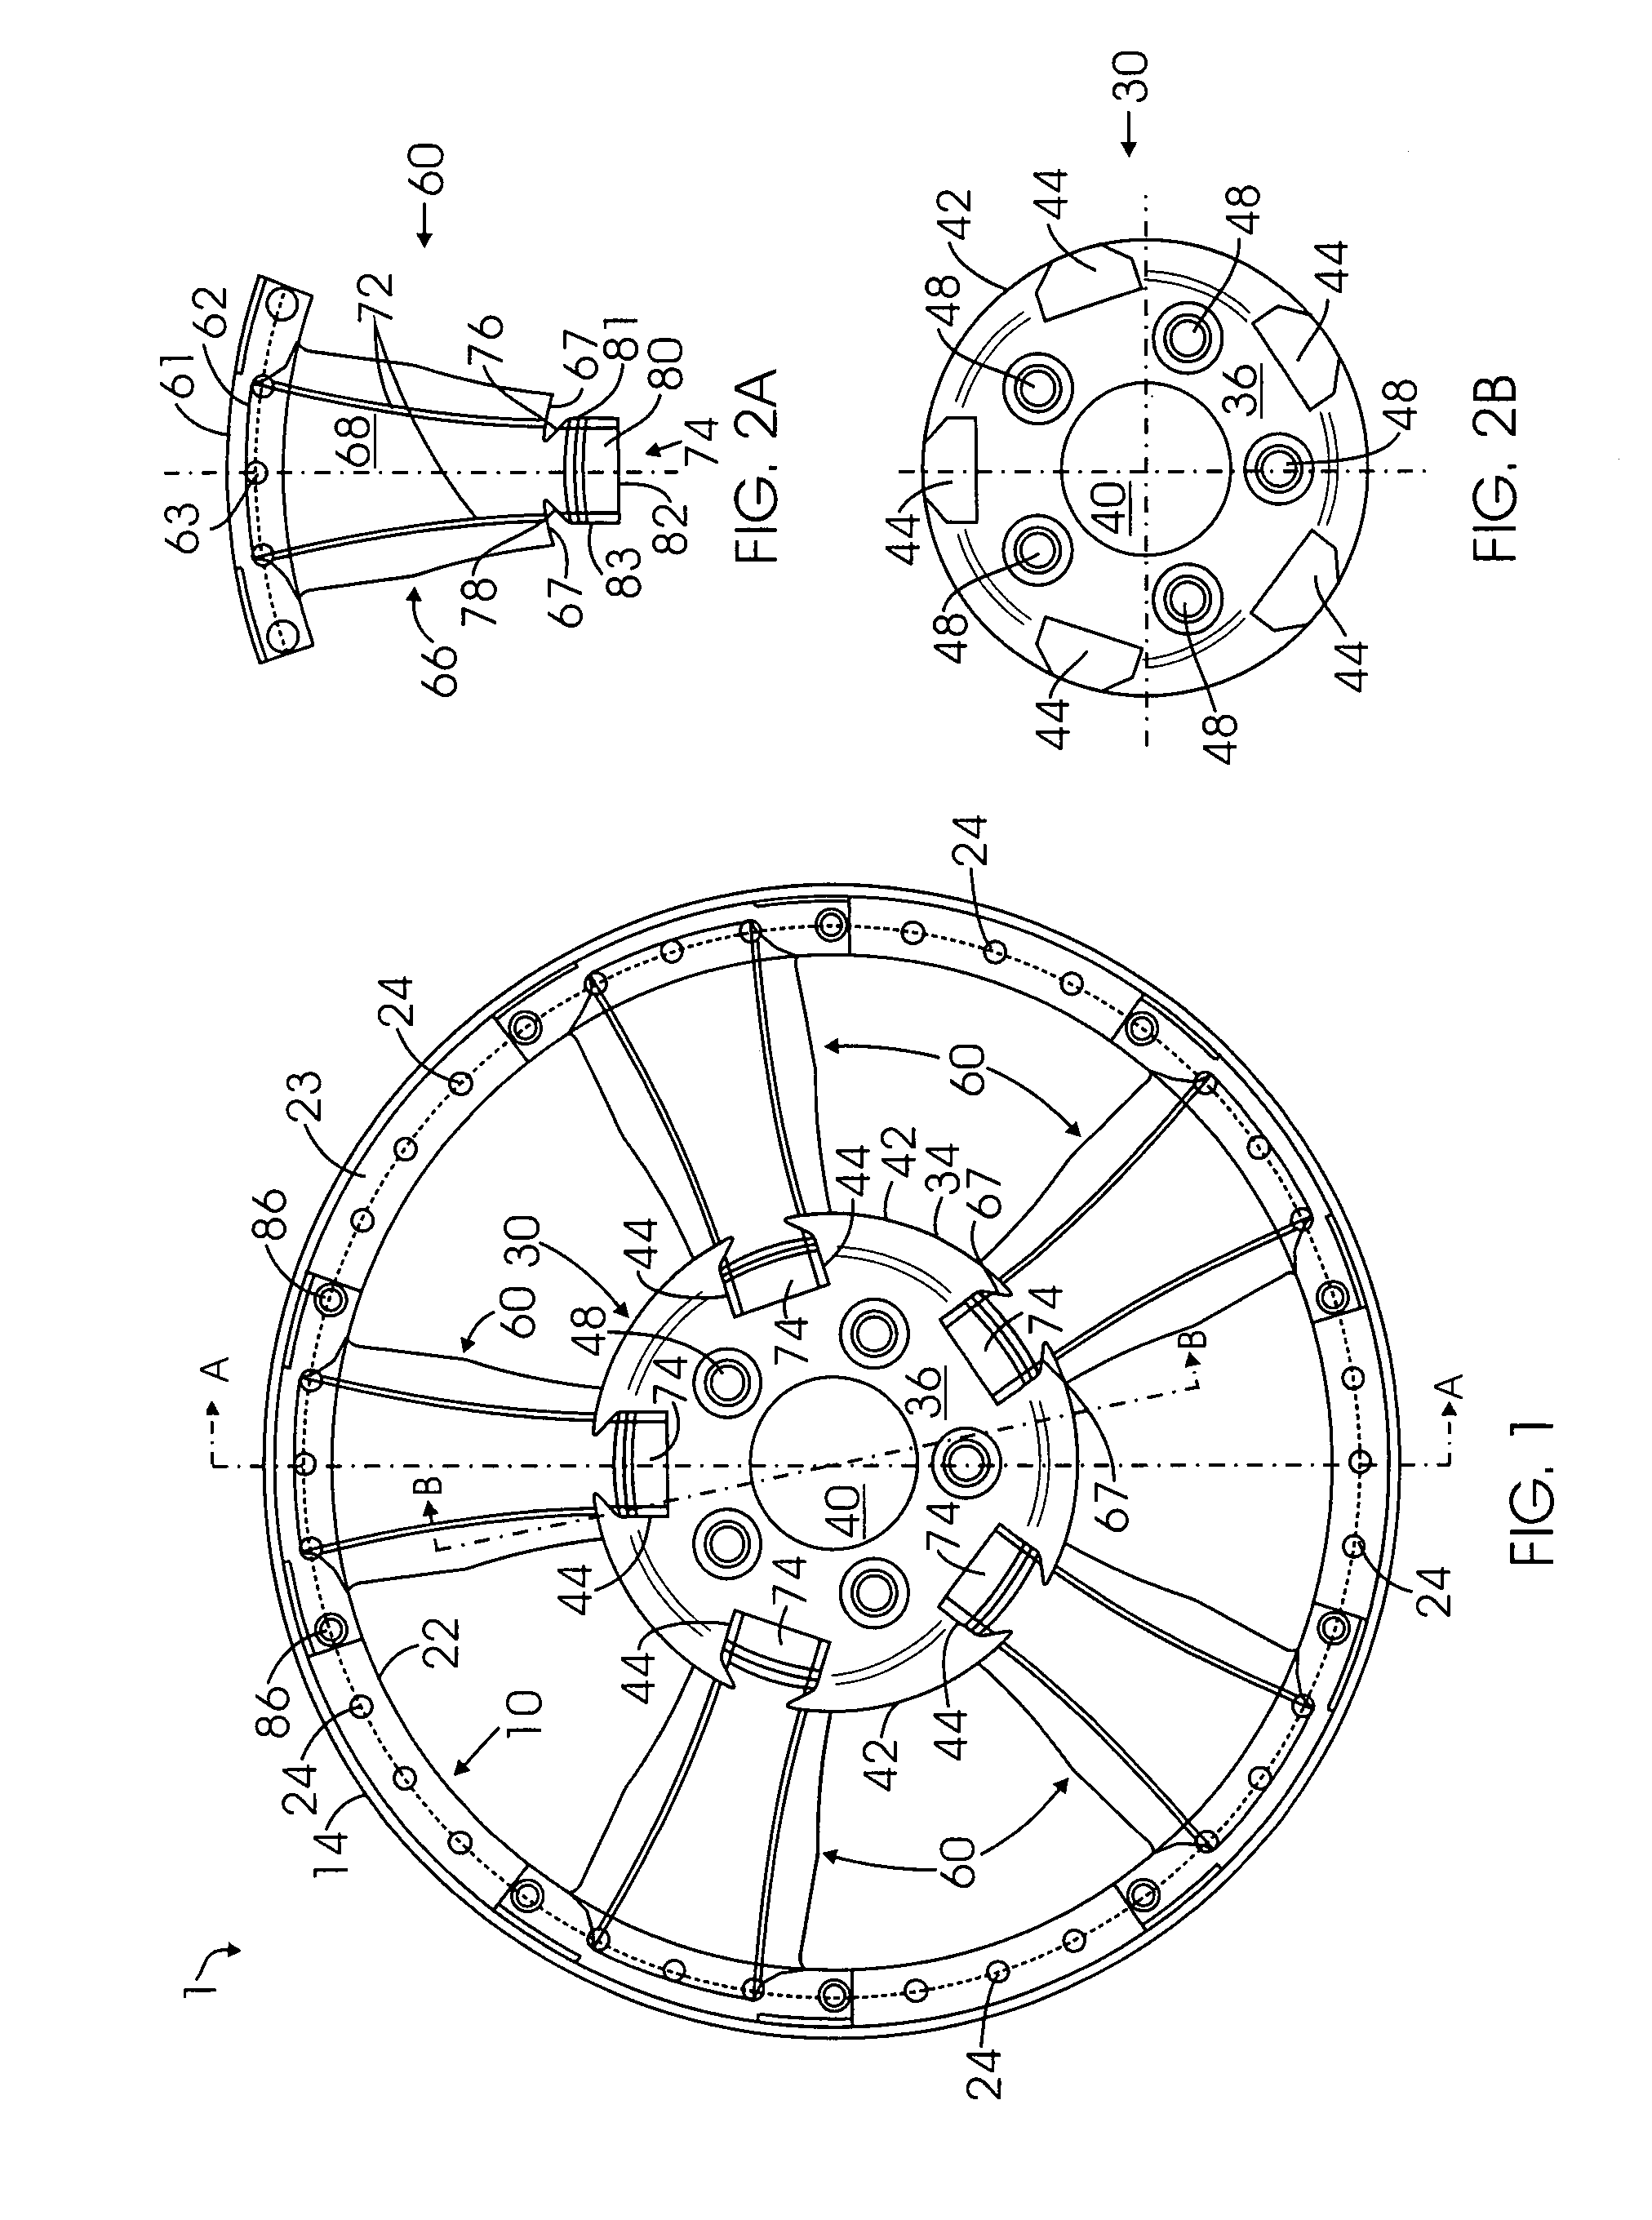 Multi-piece wheel